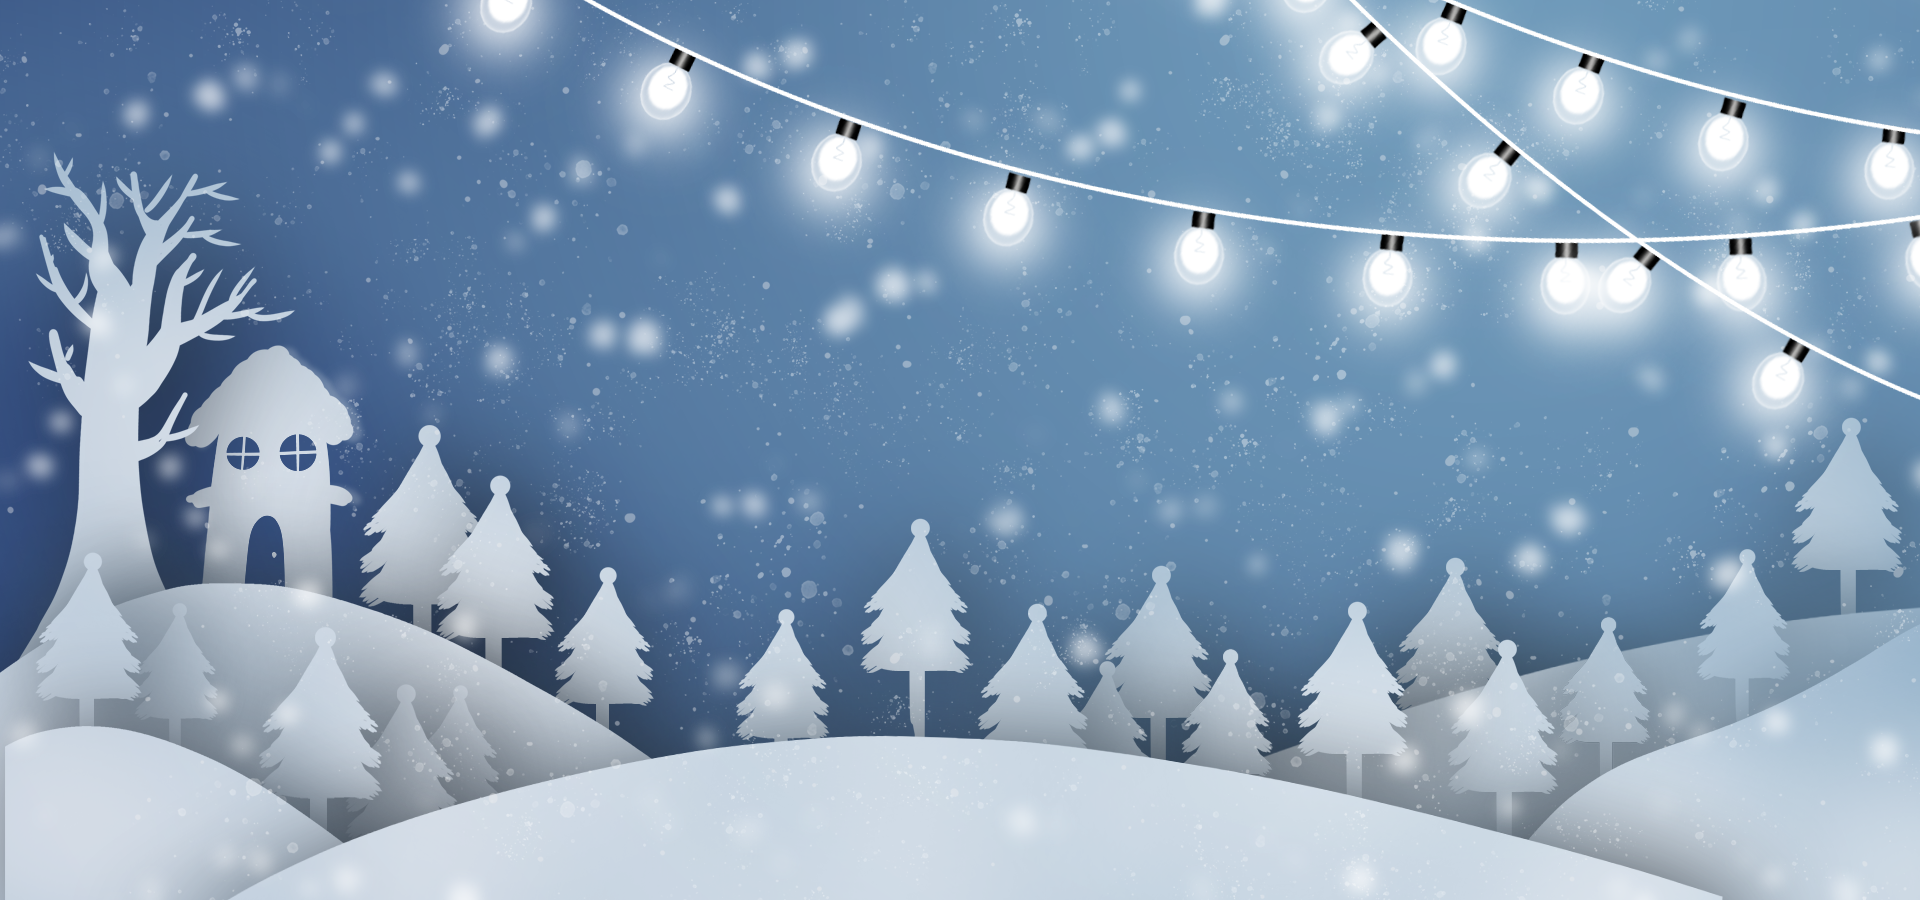 灯串植物亮白彩灯圣诞树装饰背景图片